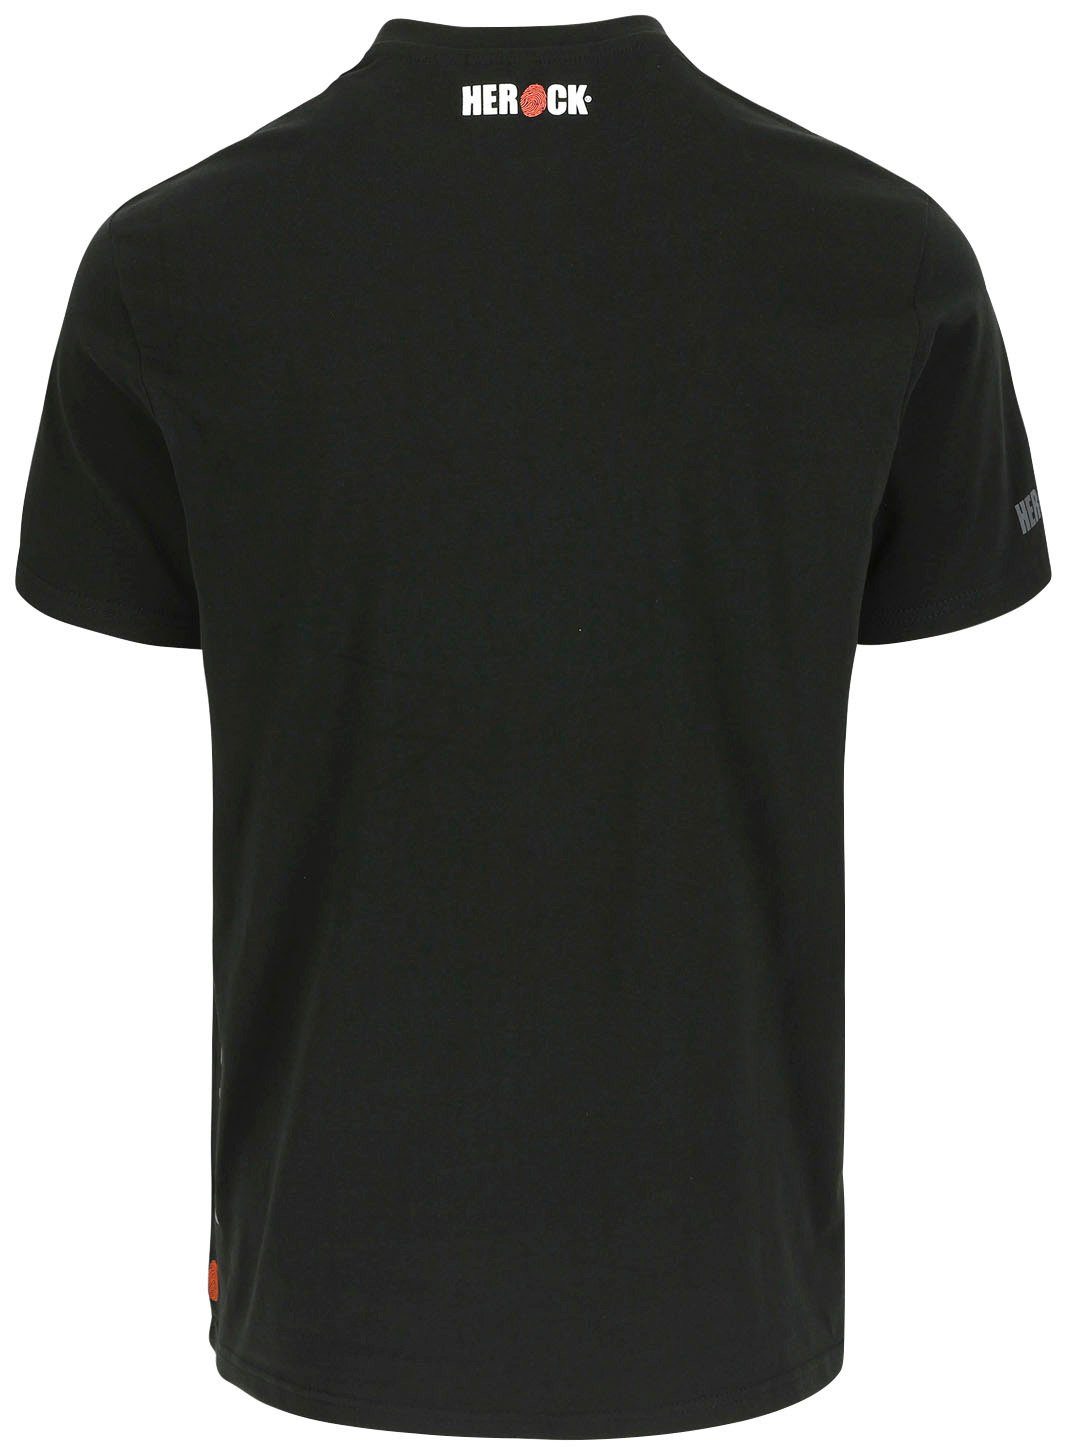 Rippstrickkragen schwarz T-Shirt Callius Rundhalsausschnitt, Ärmel, T-Shirt Herock®-Aufdruck, Herock Ärmel kurze kurze